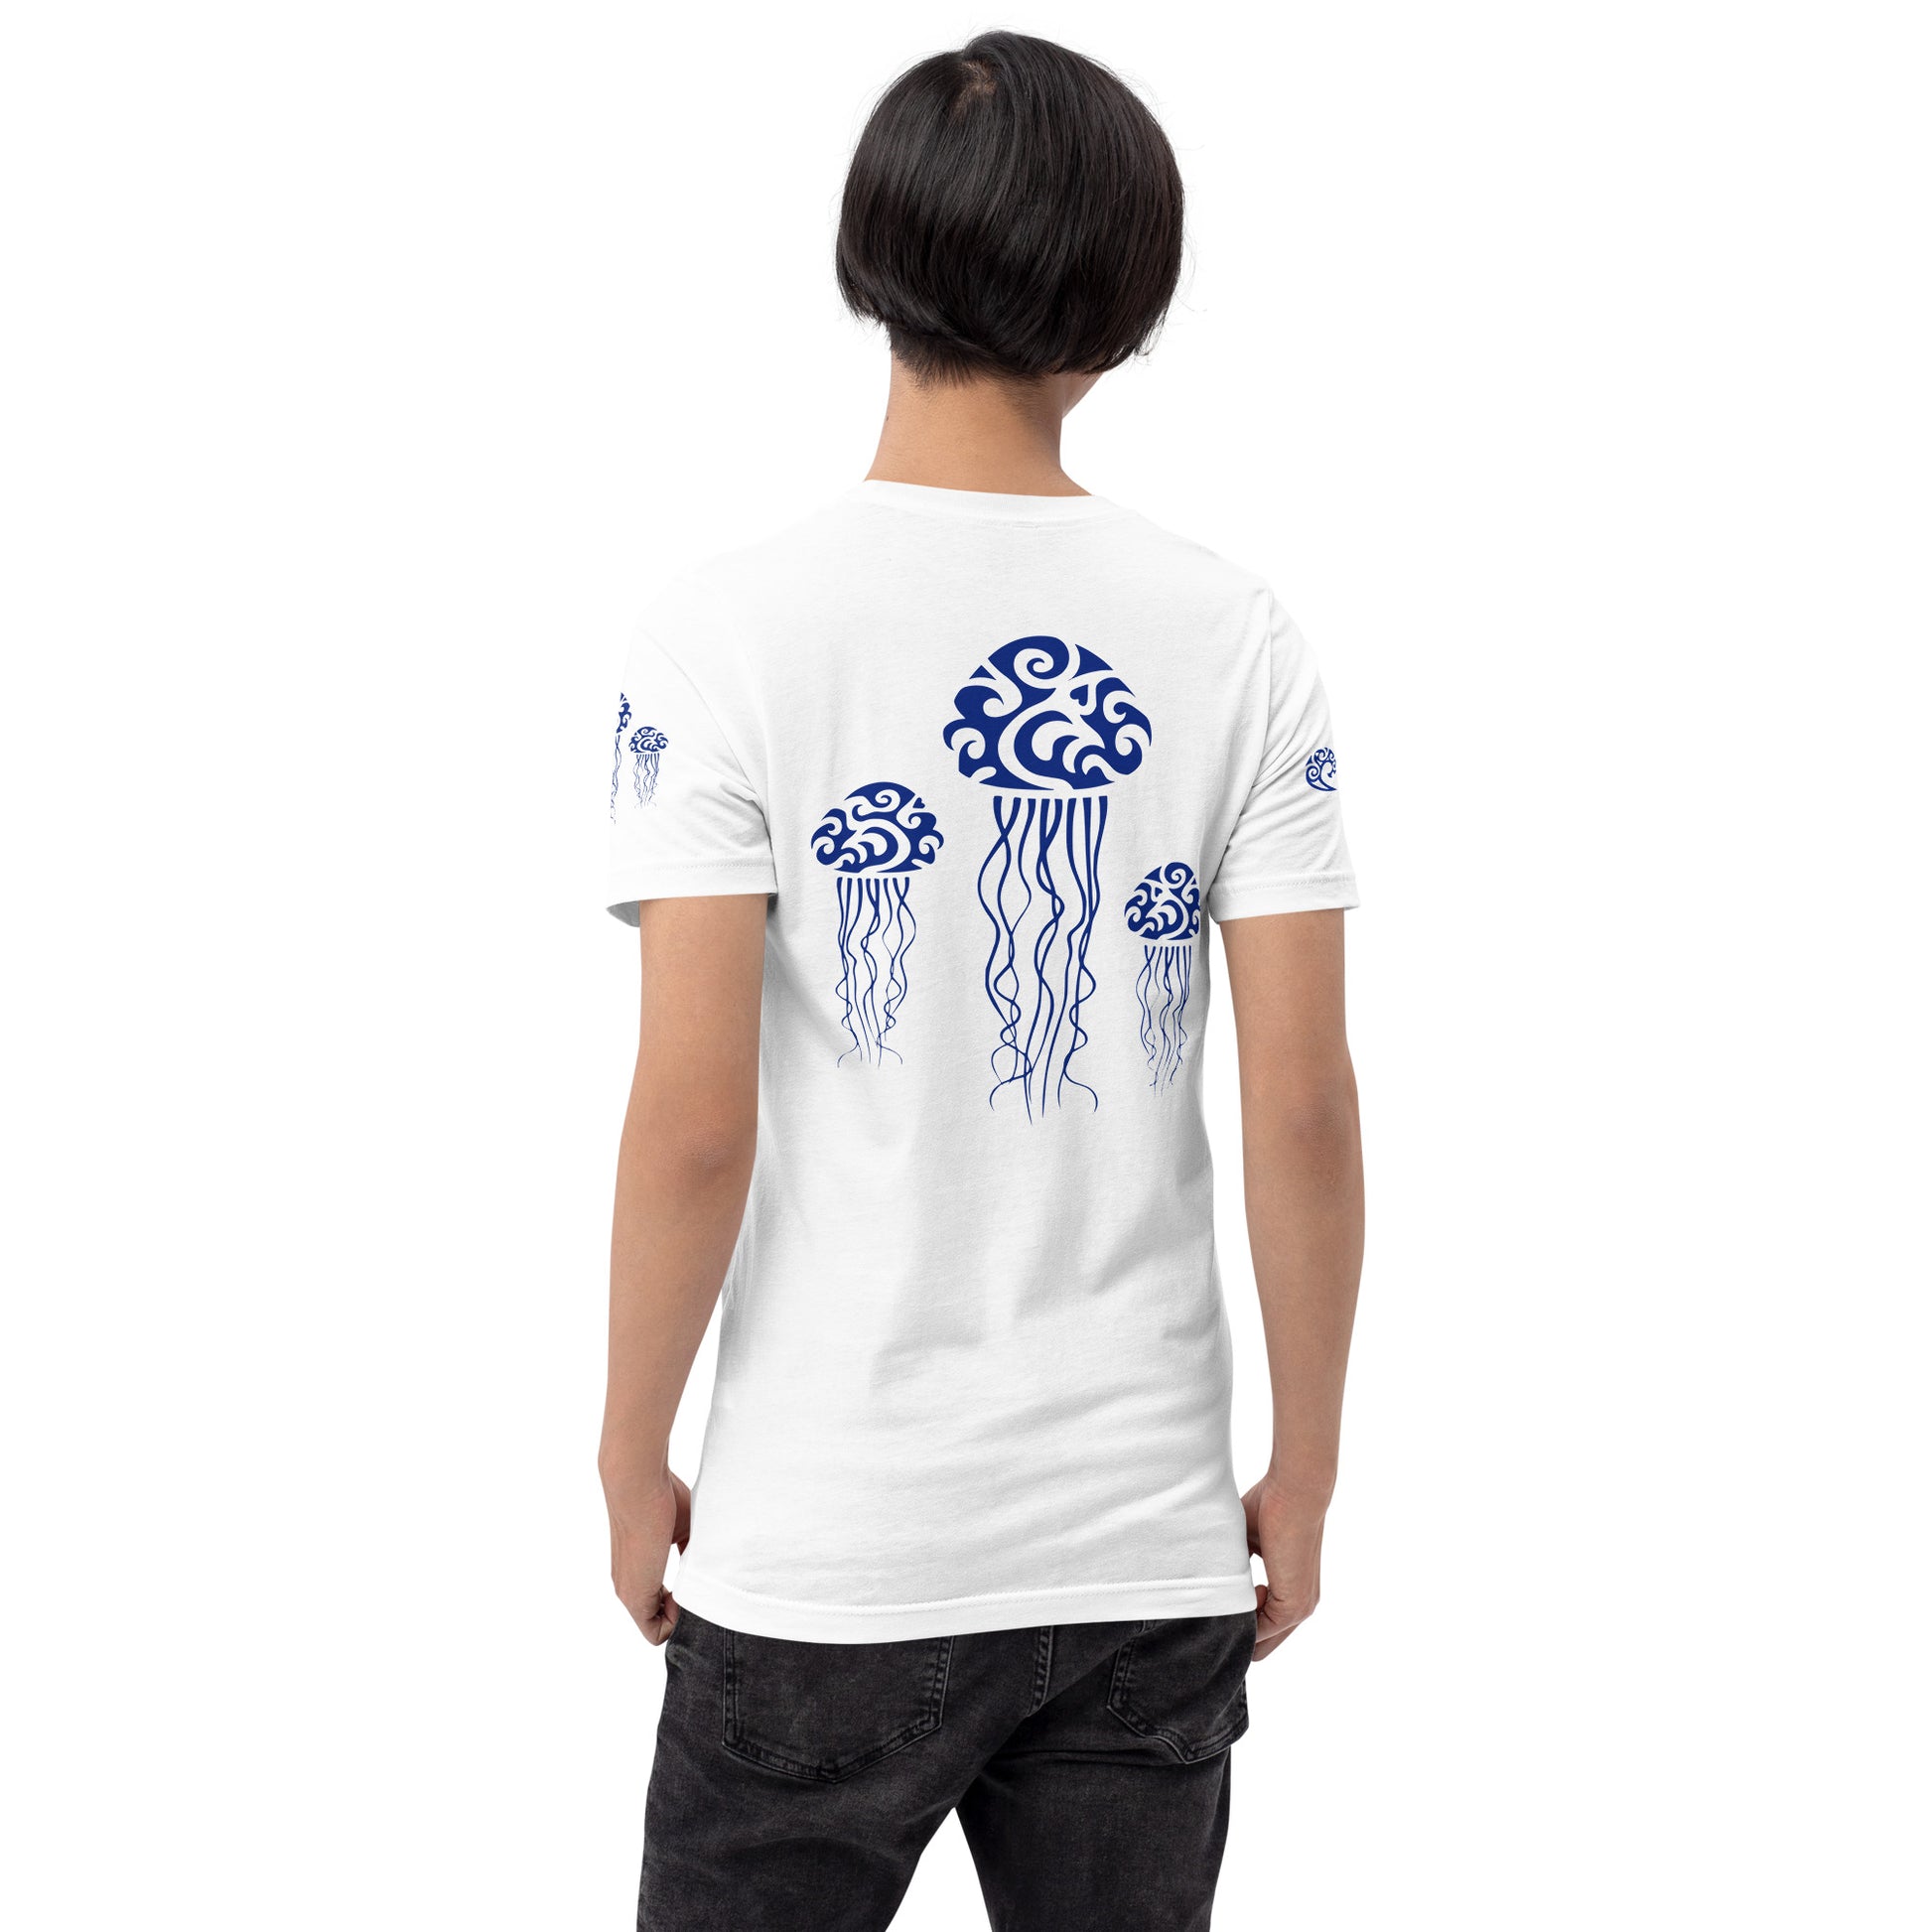 Polynesian T-shirt Jellyfish Tribal Samoan For Men and Women Back Navy on White